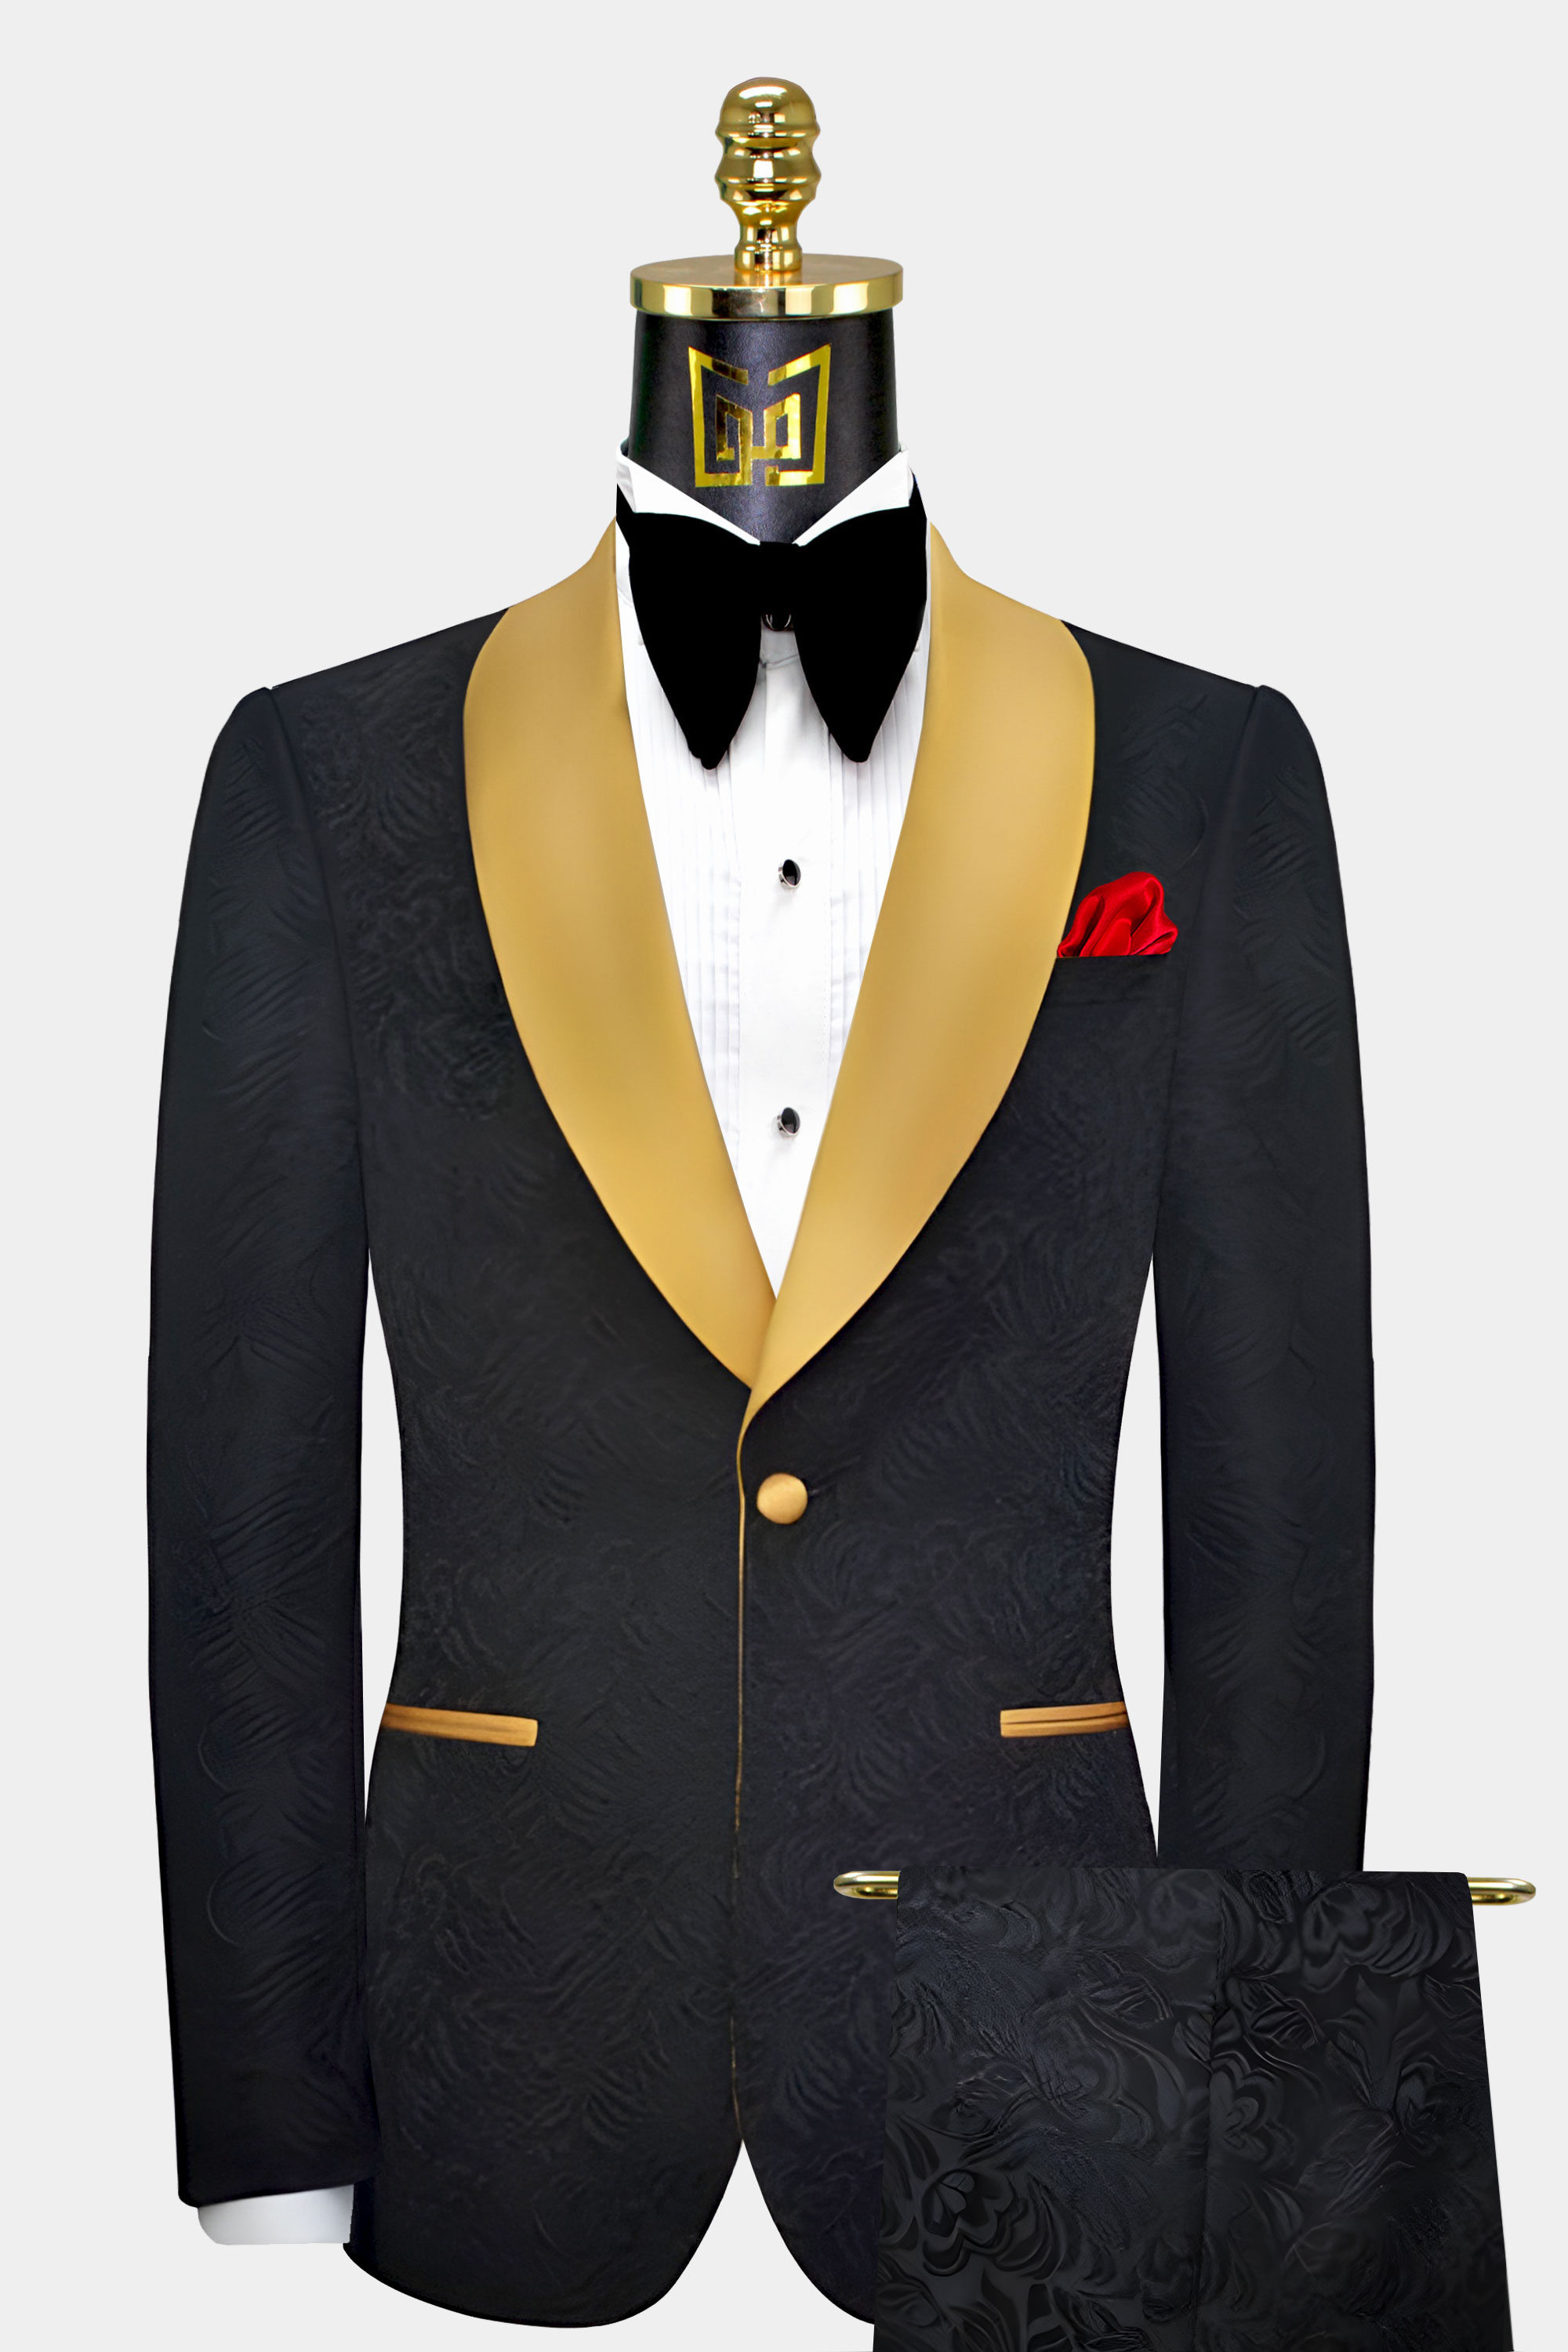 Suits & Tuxedos in Roseville, CA - Gentleman's Guru